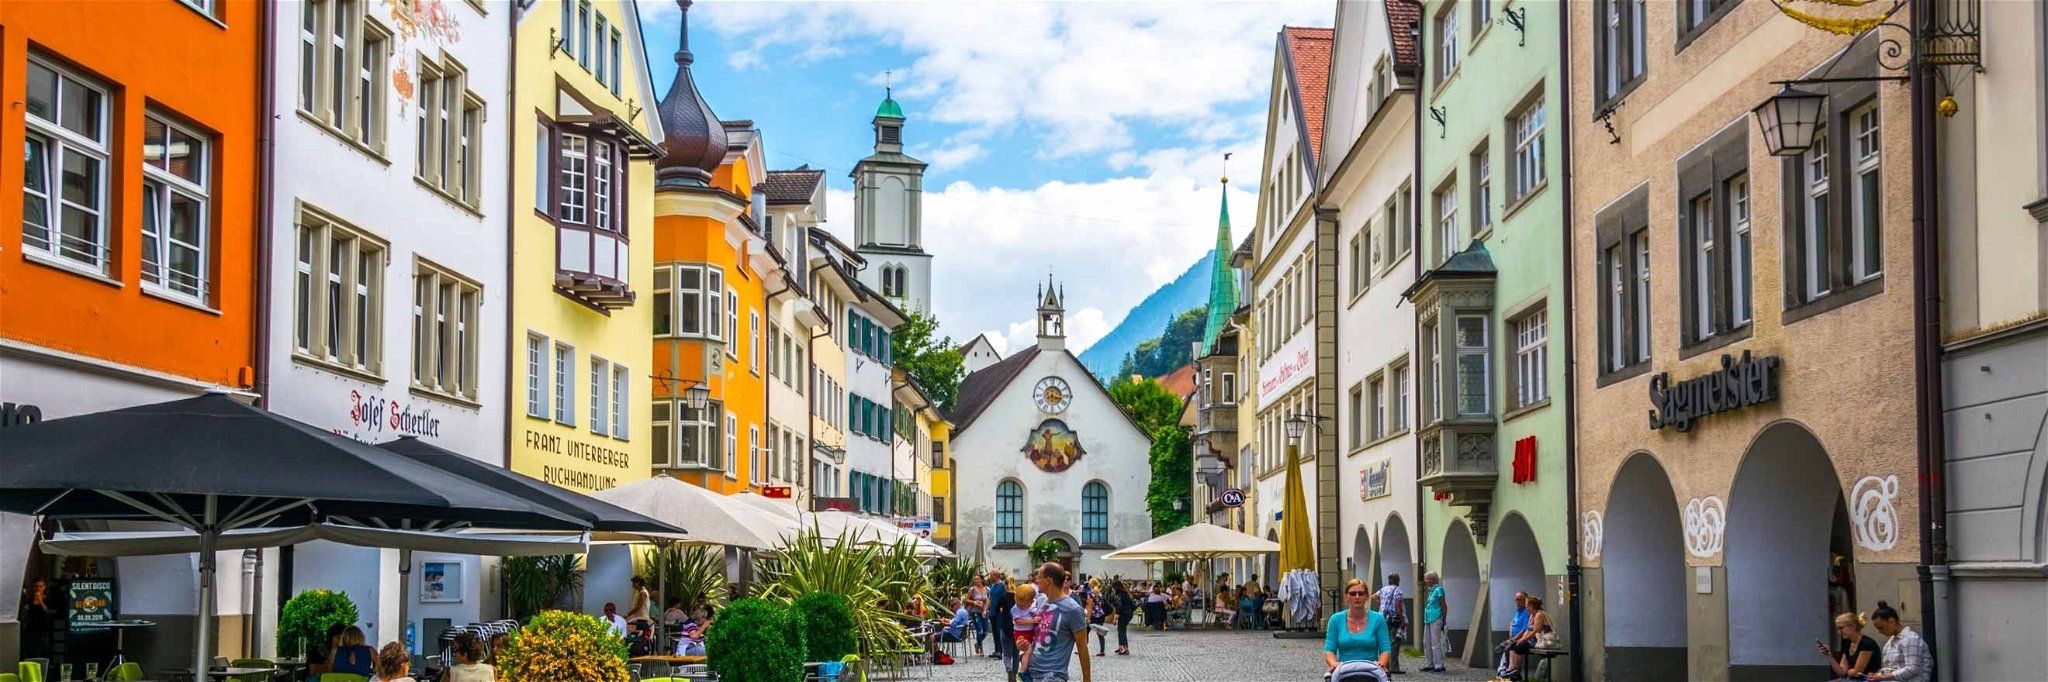 Die historische Altstadt von Feldkirch lädt zum Flanieren ein.